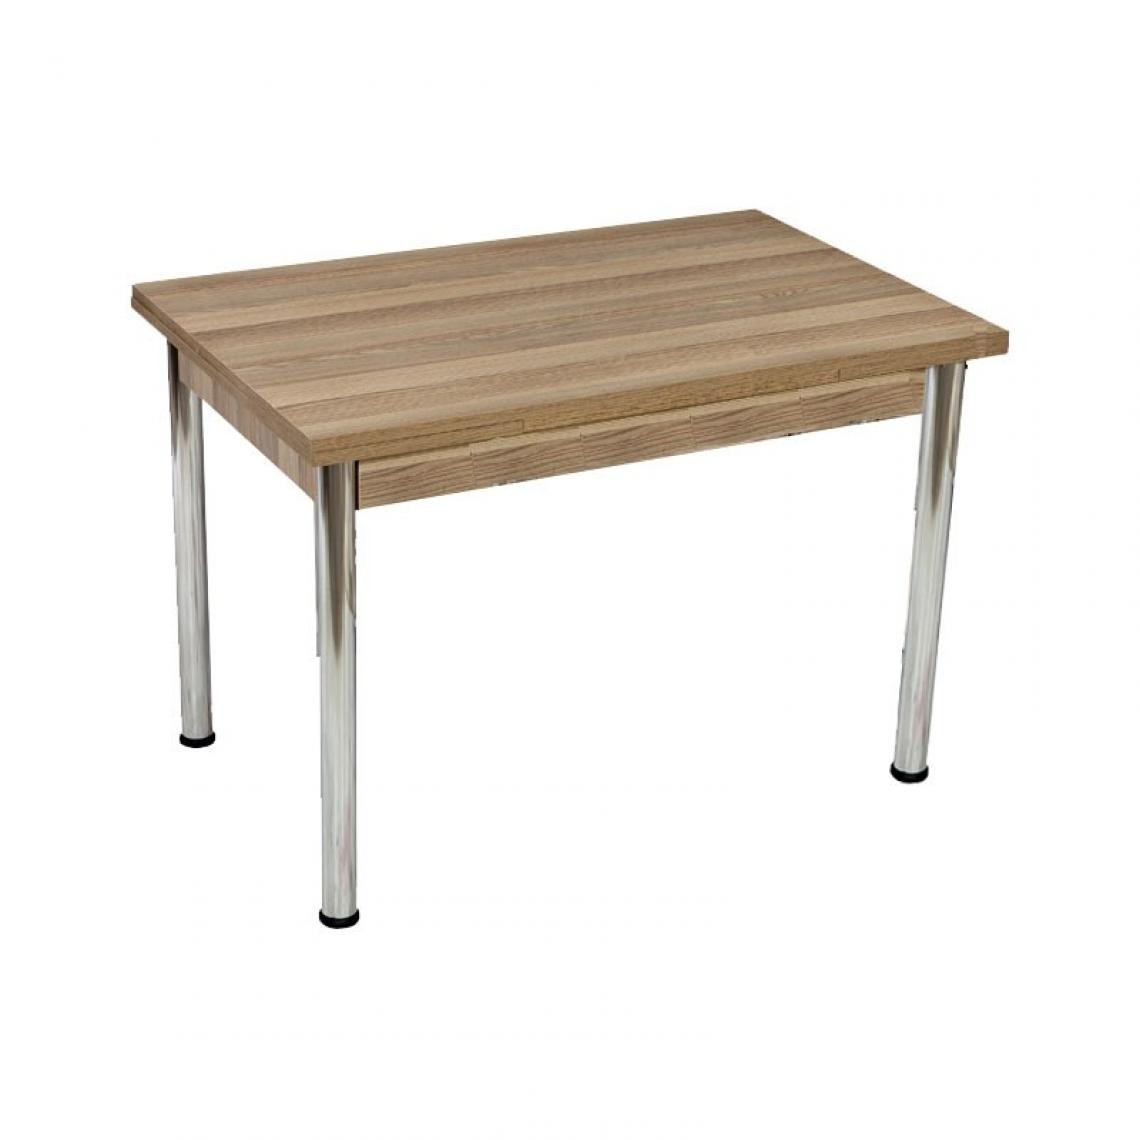 Webmarketpoint - Table en bois lamellé couleur orme pieds acier 70x110xh.76 cm - Tables à manger